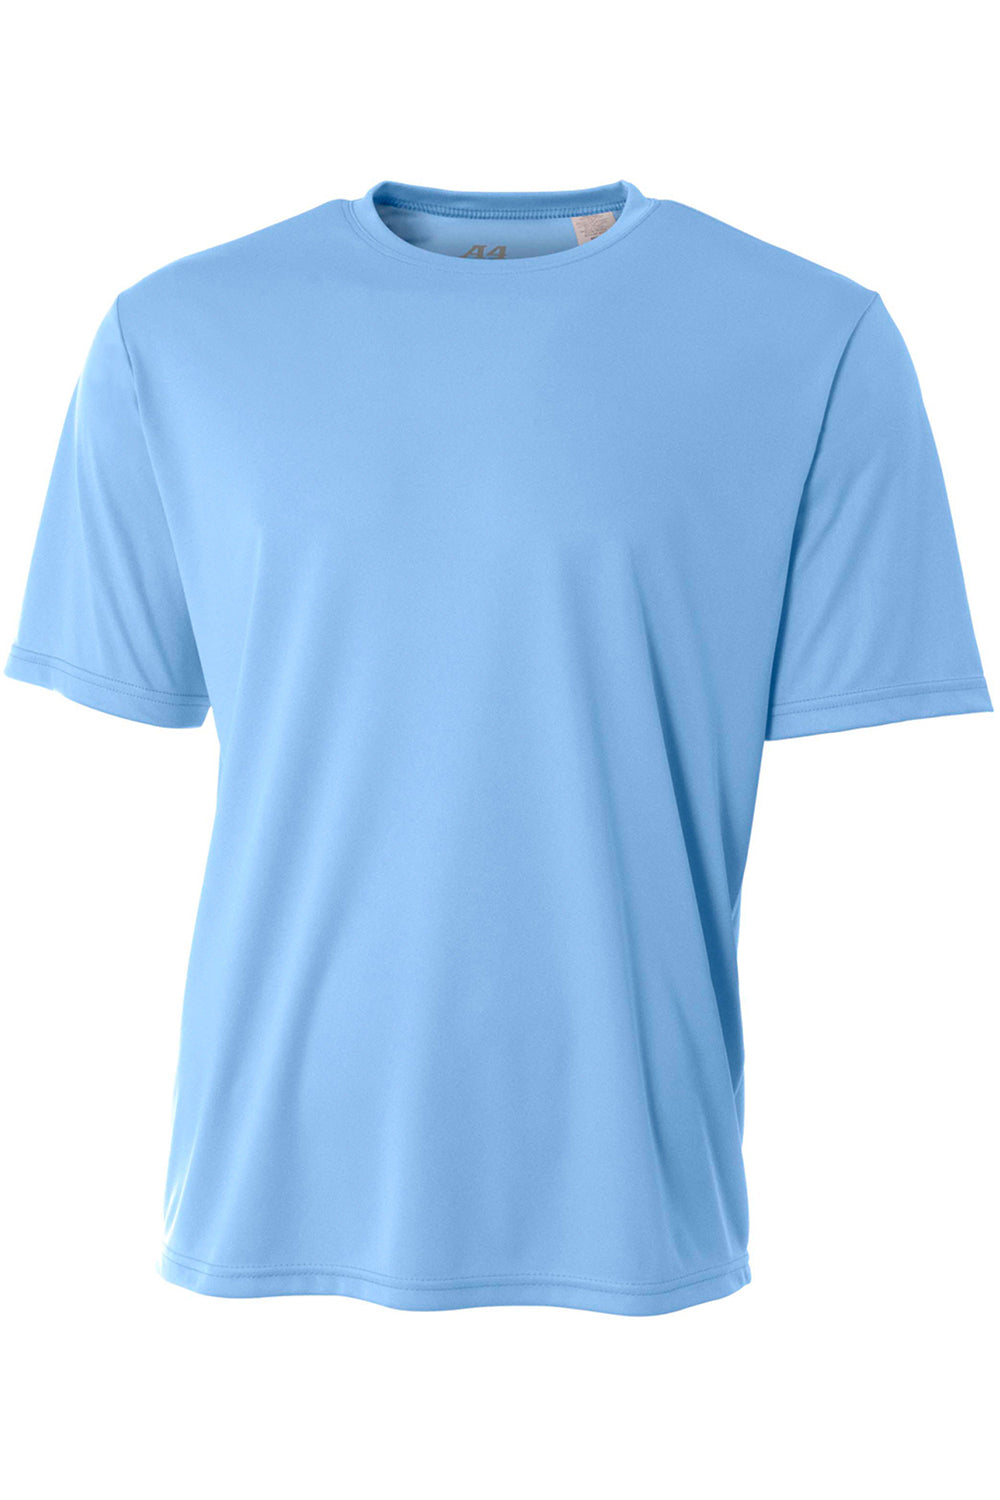 A4 N3142 Mens Performance Moisture Wicking Short Sleeve Crewneck T-Shirt Light Blue Flat Front